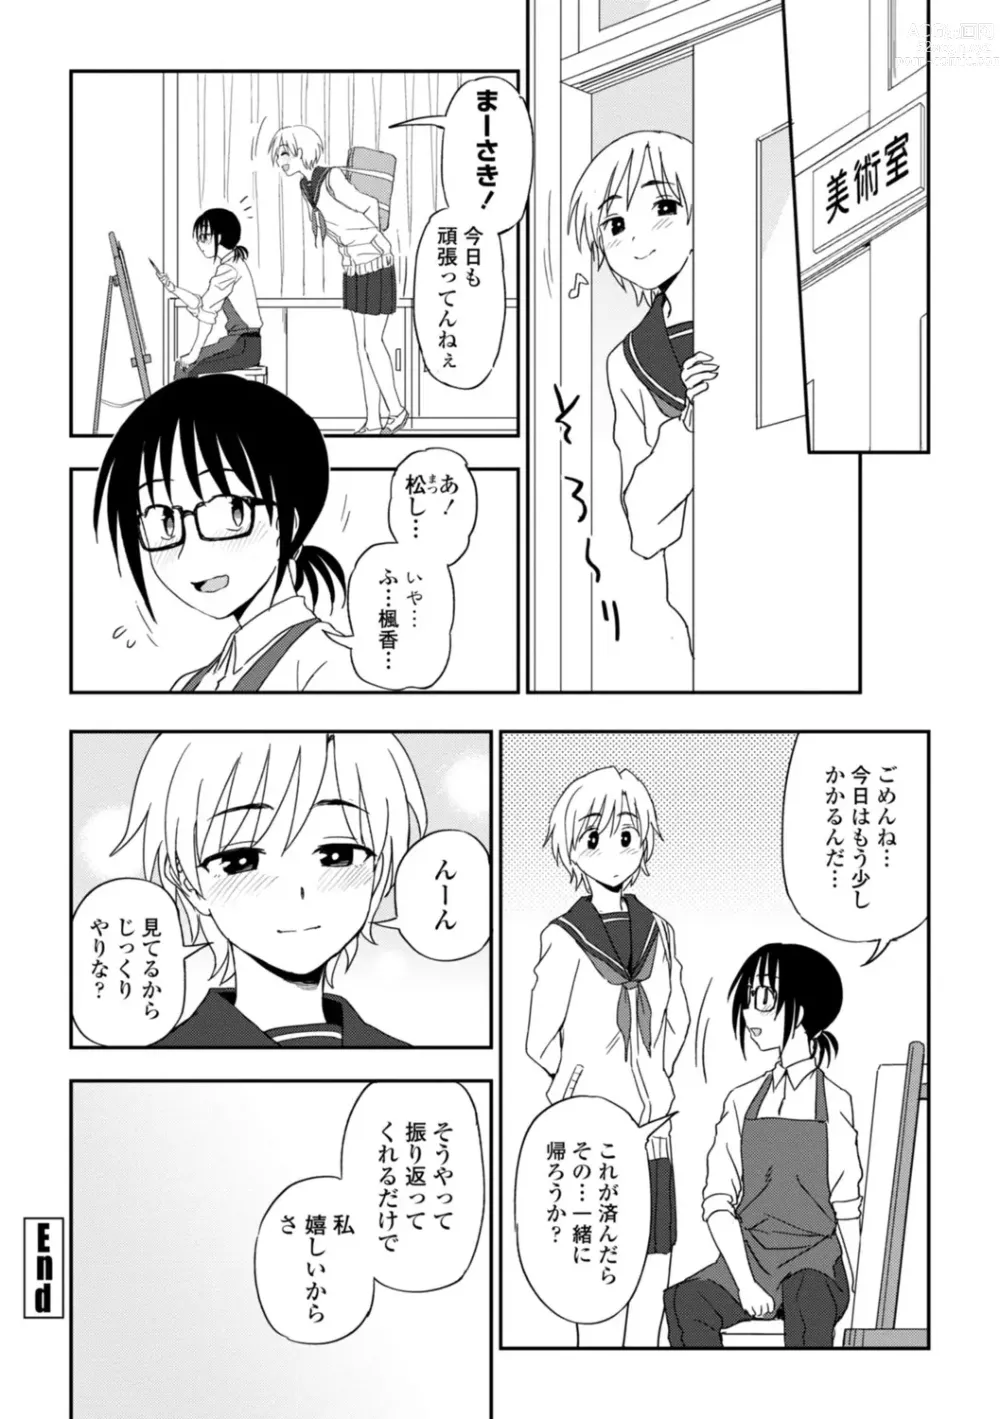 Page 190 of manga Watashi no Subete Sasagemasu - Ill give you all of mine.